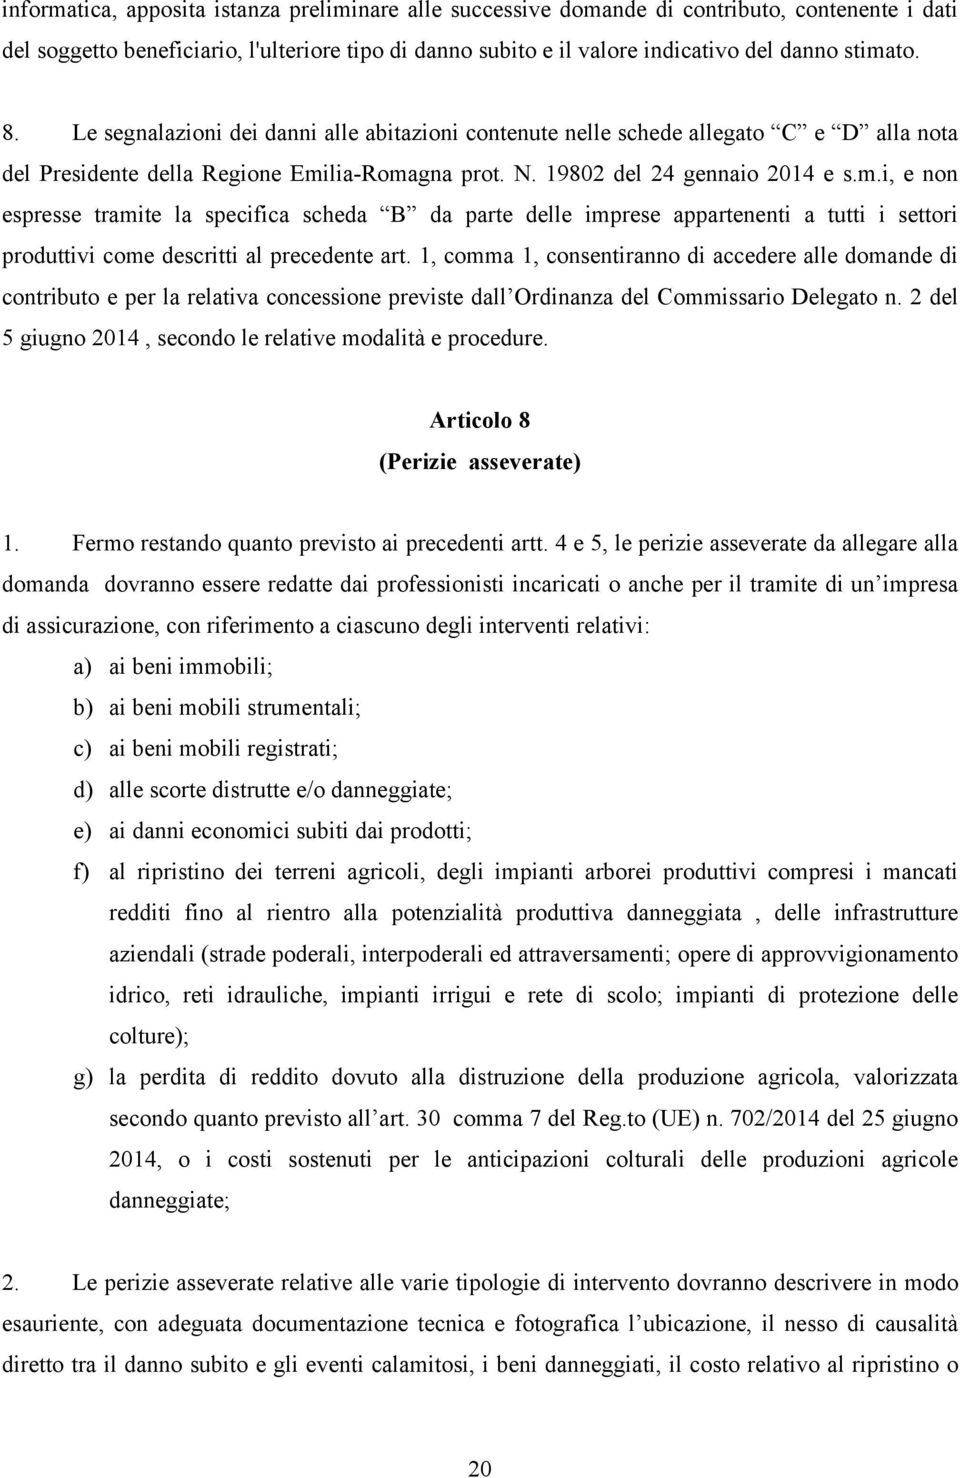 lia-Romagna prot. N. 19802 del 24 gennaio 2014 e s.m.i, e non espresse tramite la specifica scheda B da parte delle imprese appartenenti a tutti i settori produttivi come descritti al precedente art.